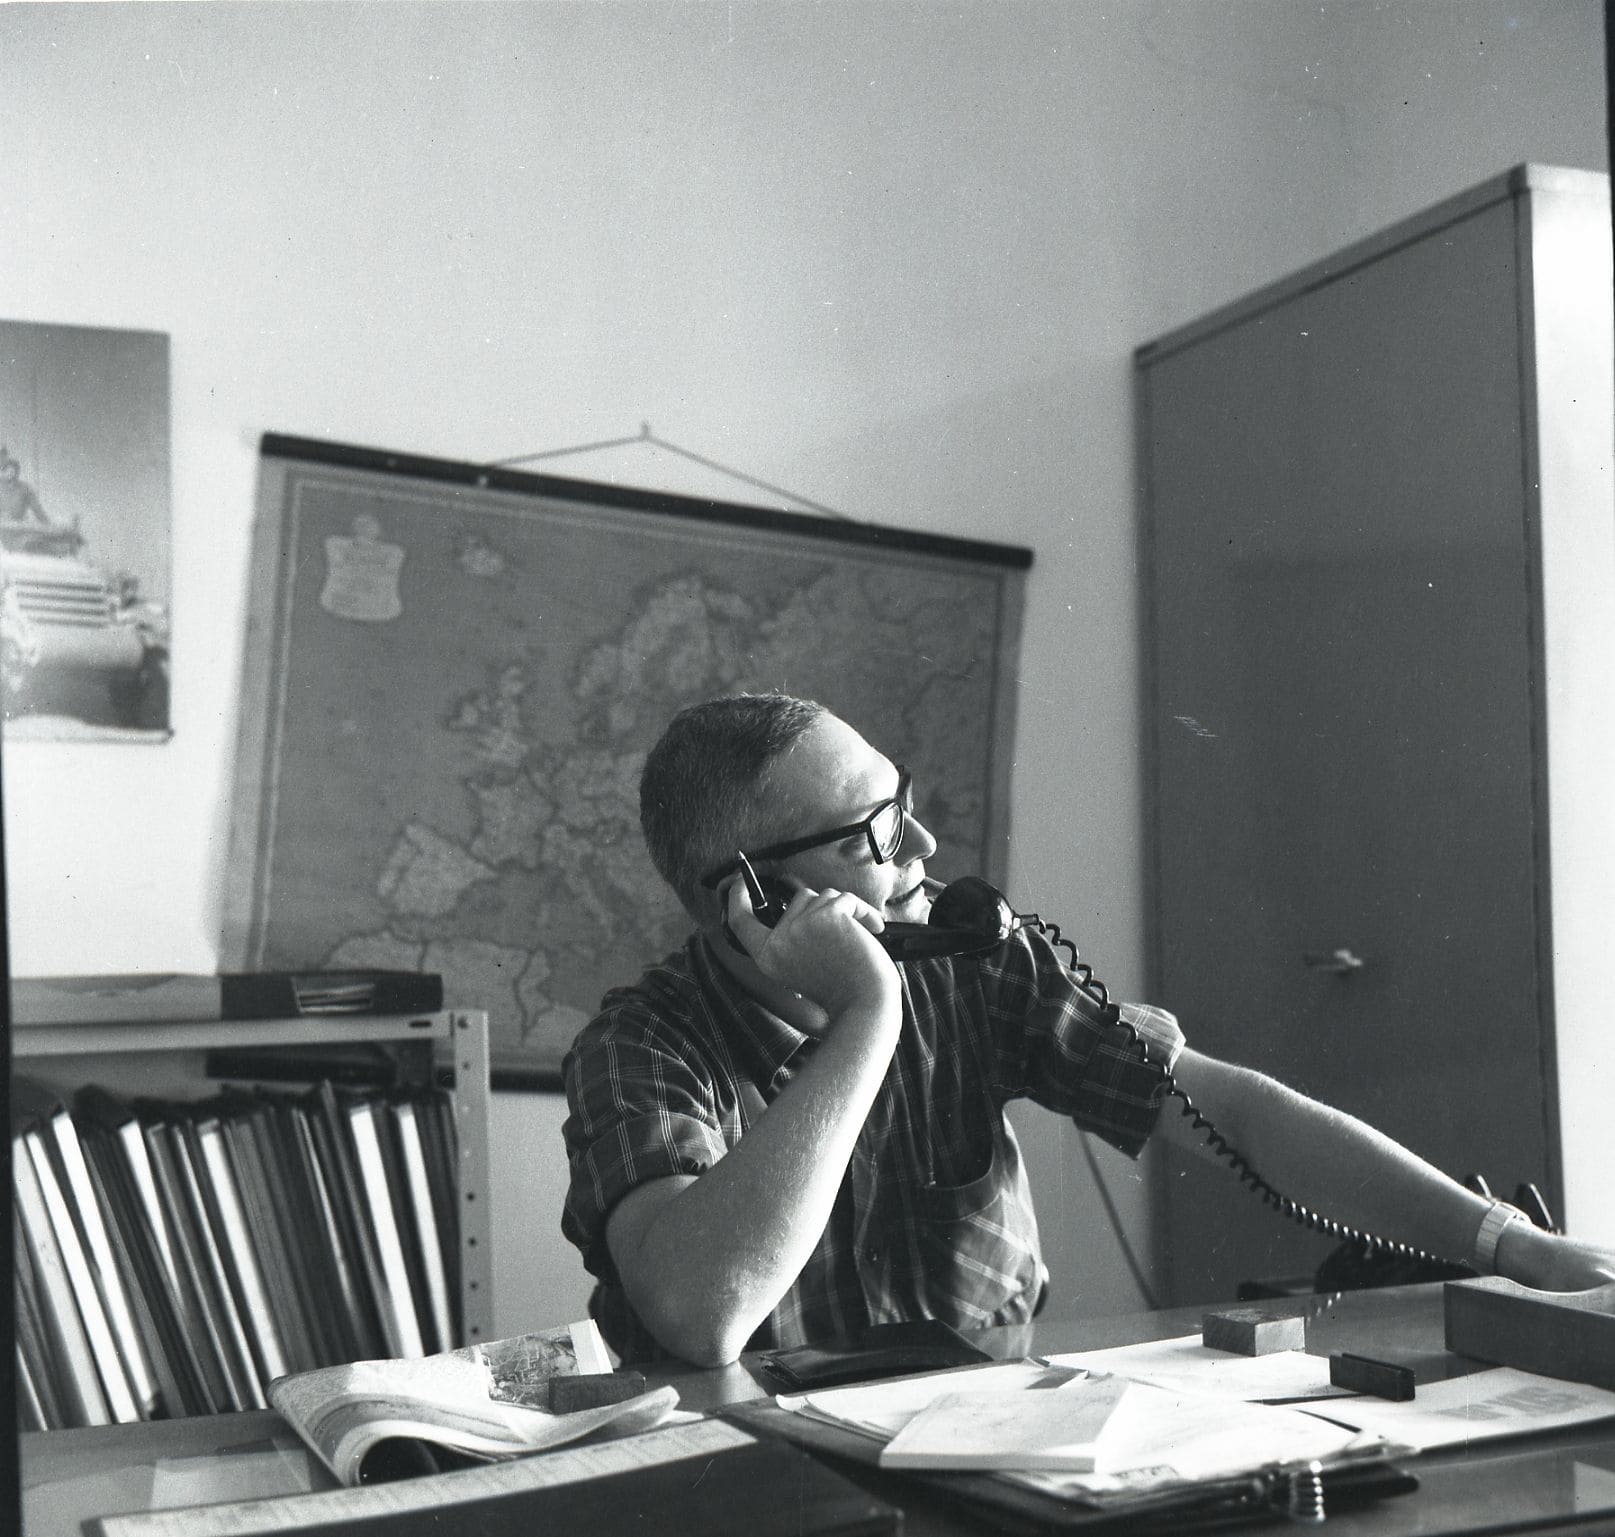 אהד זמורה, מקים הוצאת זמורה ביתן, במשרדו, 1968 (צילום: אוסף מיתר, האוסף הלאומי לתצלומים על שם משפחת פריצקר, הספרייה הלאומית)